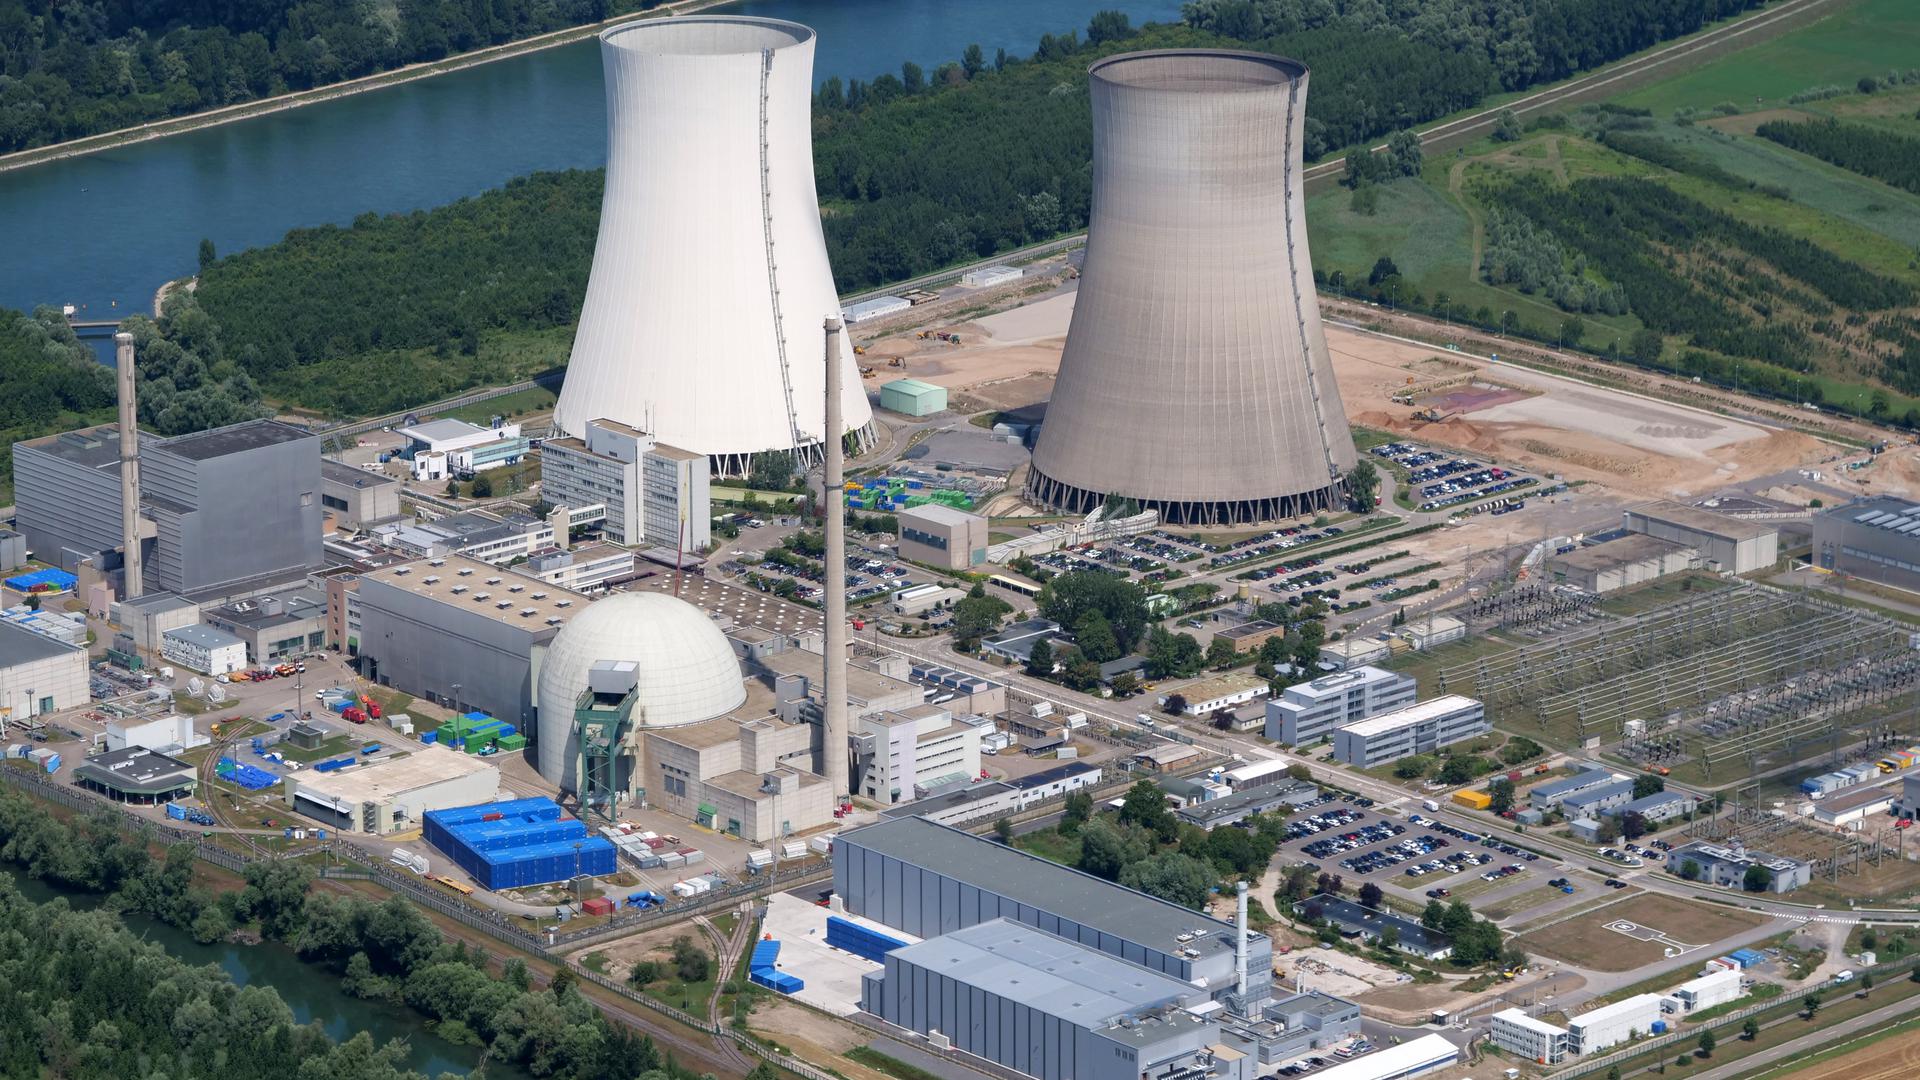 PROBLEMFALL: Der Landkreis will die Betreiber der kerntechnischen Anlagen im Kreis – hier das Kernkraftwerk Philippsburg – darauf hinweisen, dass die Abfälle aus dem Rückbau der Anlagen in einem Bergwerk verwertet werden könnten.